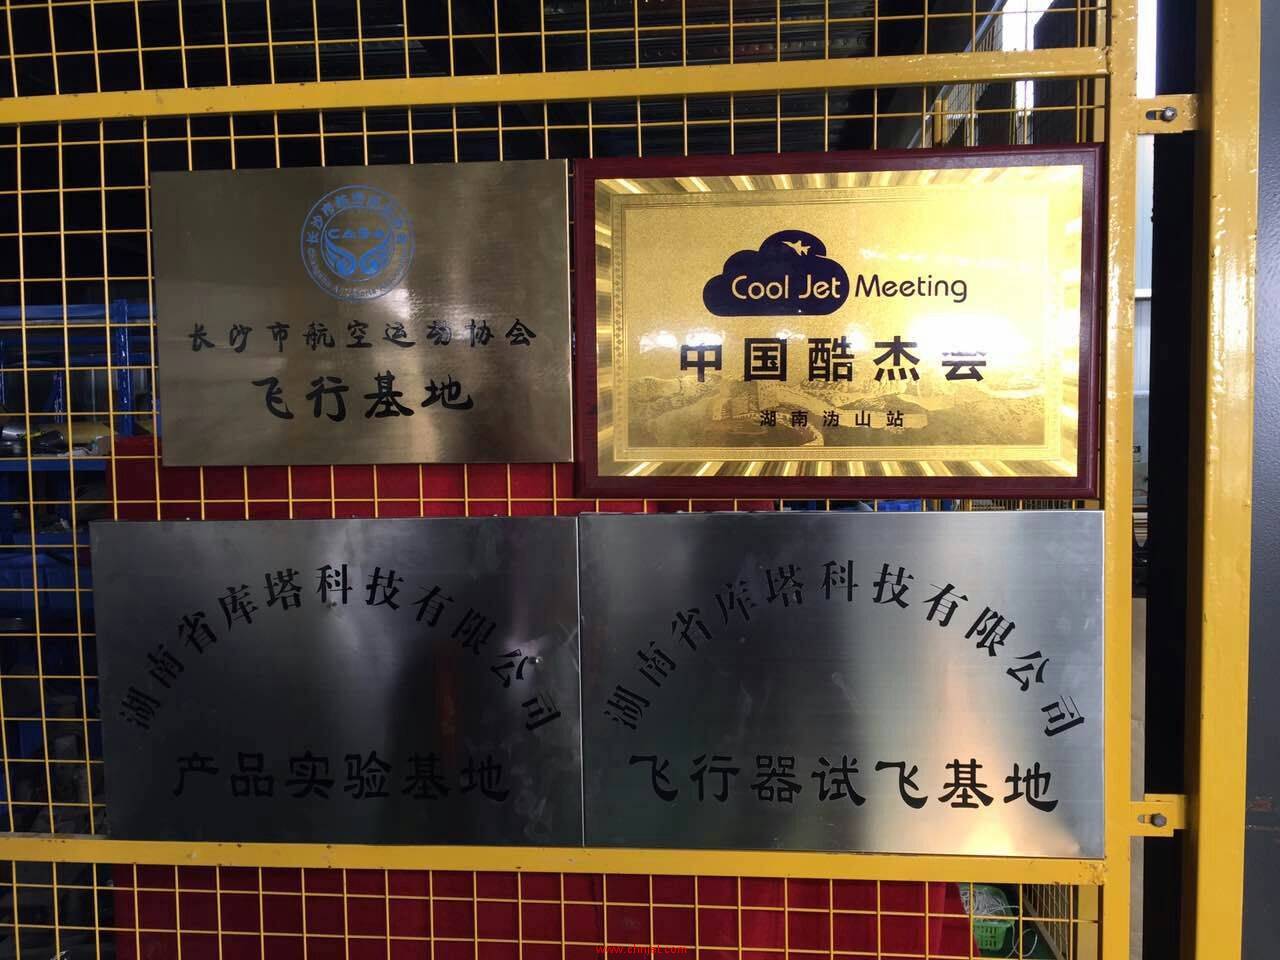 中国酷杰会湖南沩山站挂牌